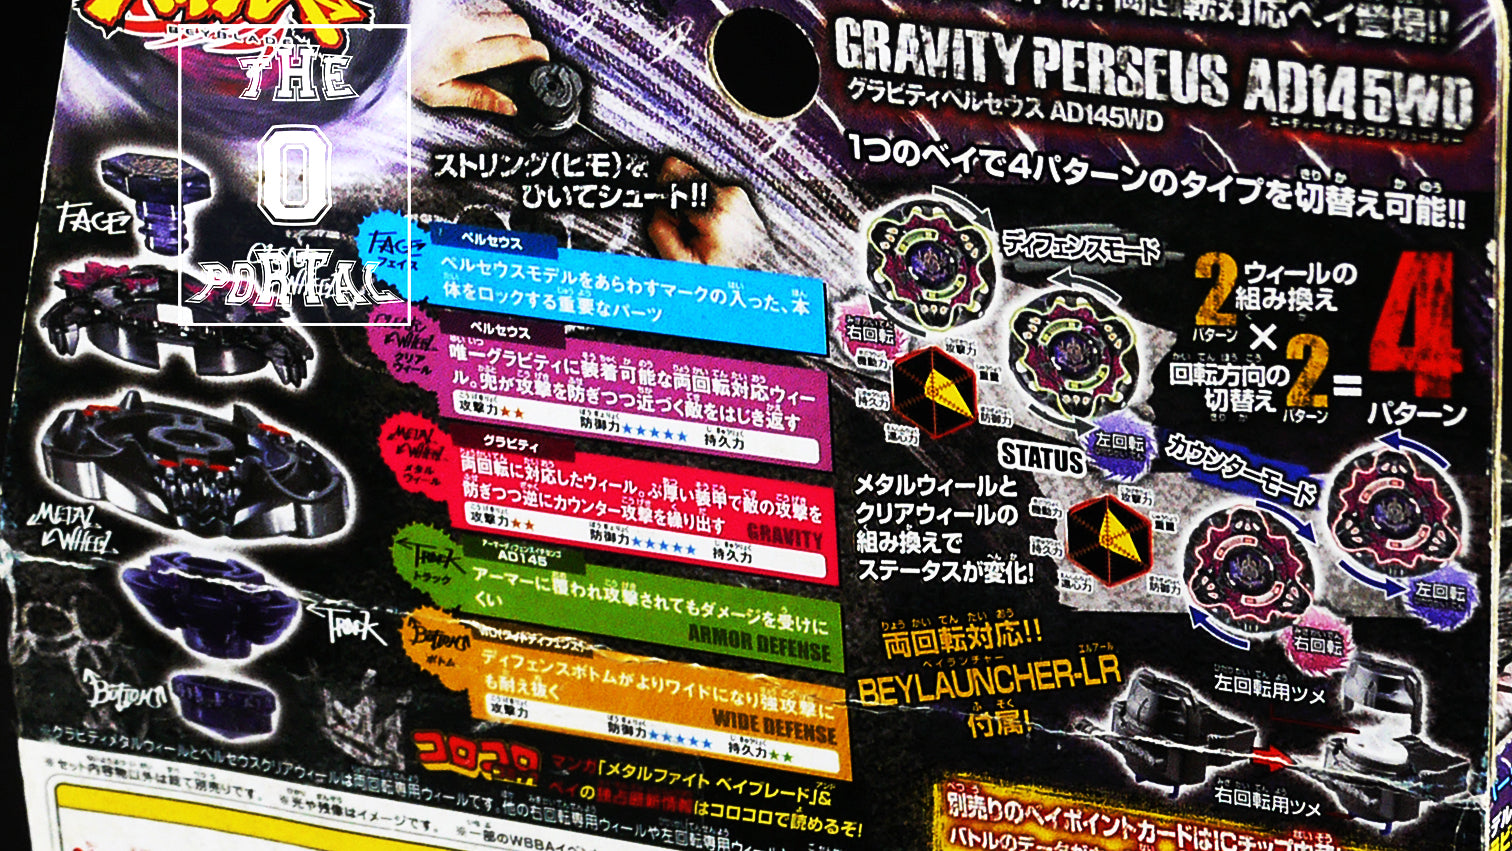 TAKARA TOMY Beyblade BB80 Gravity Perseus Metal Fusion Starter